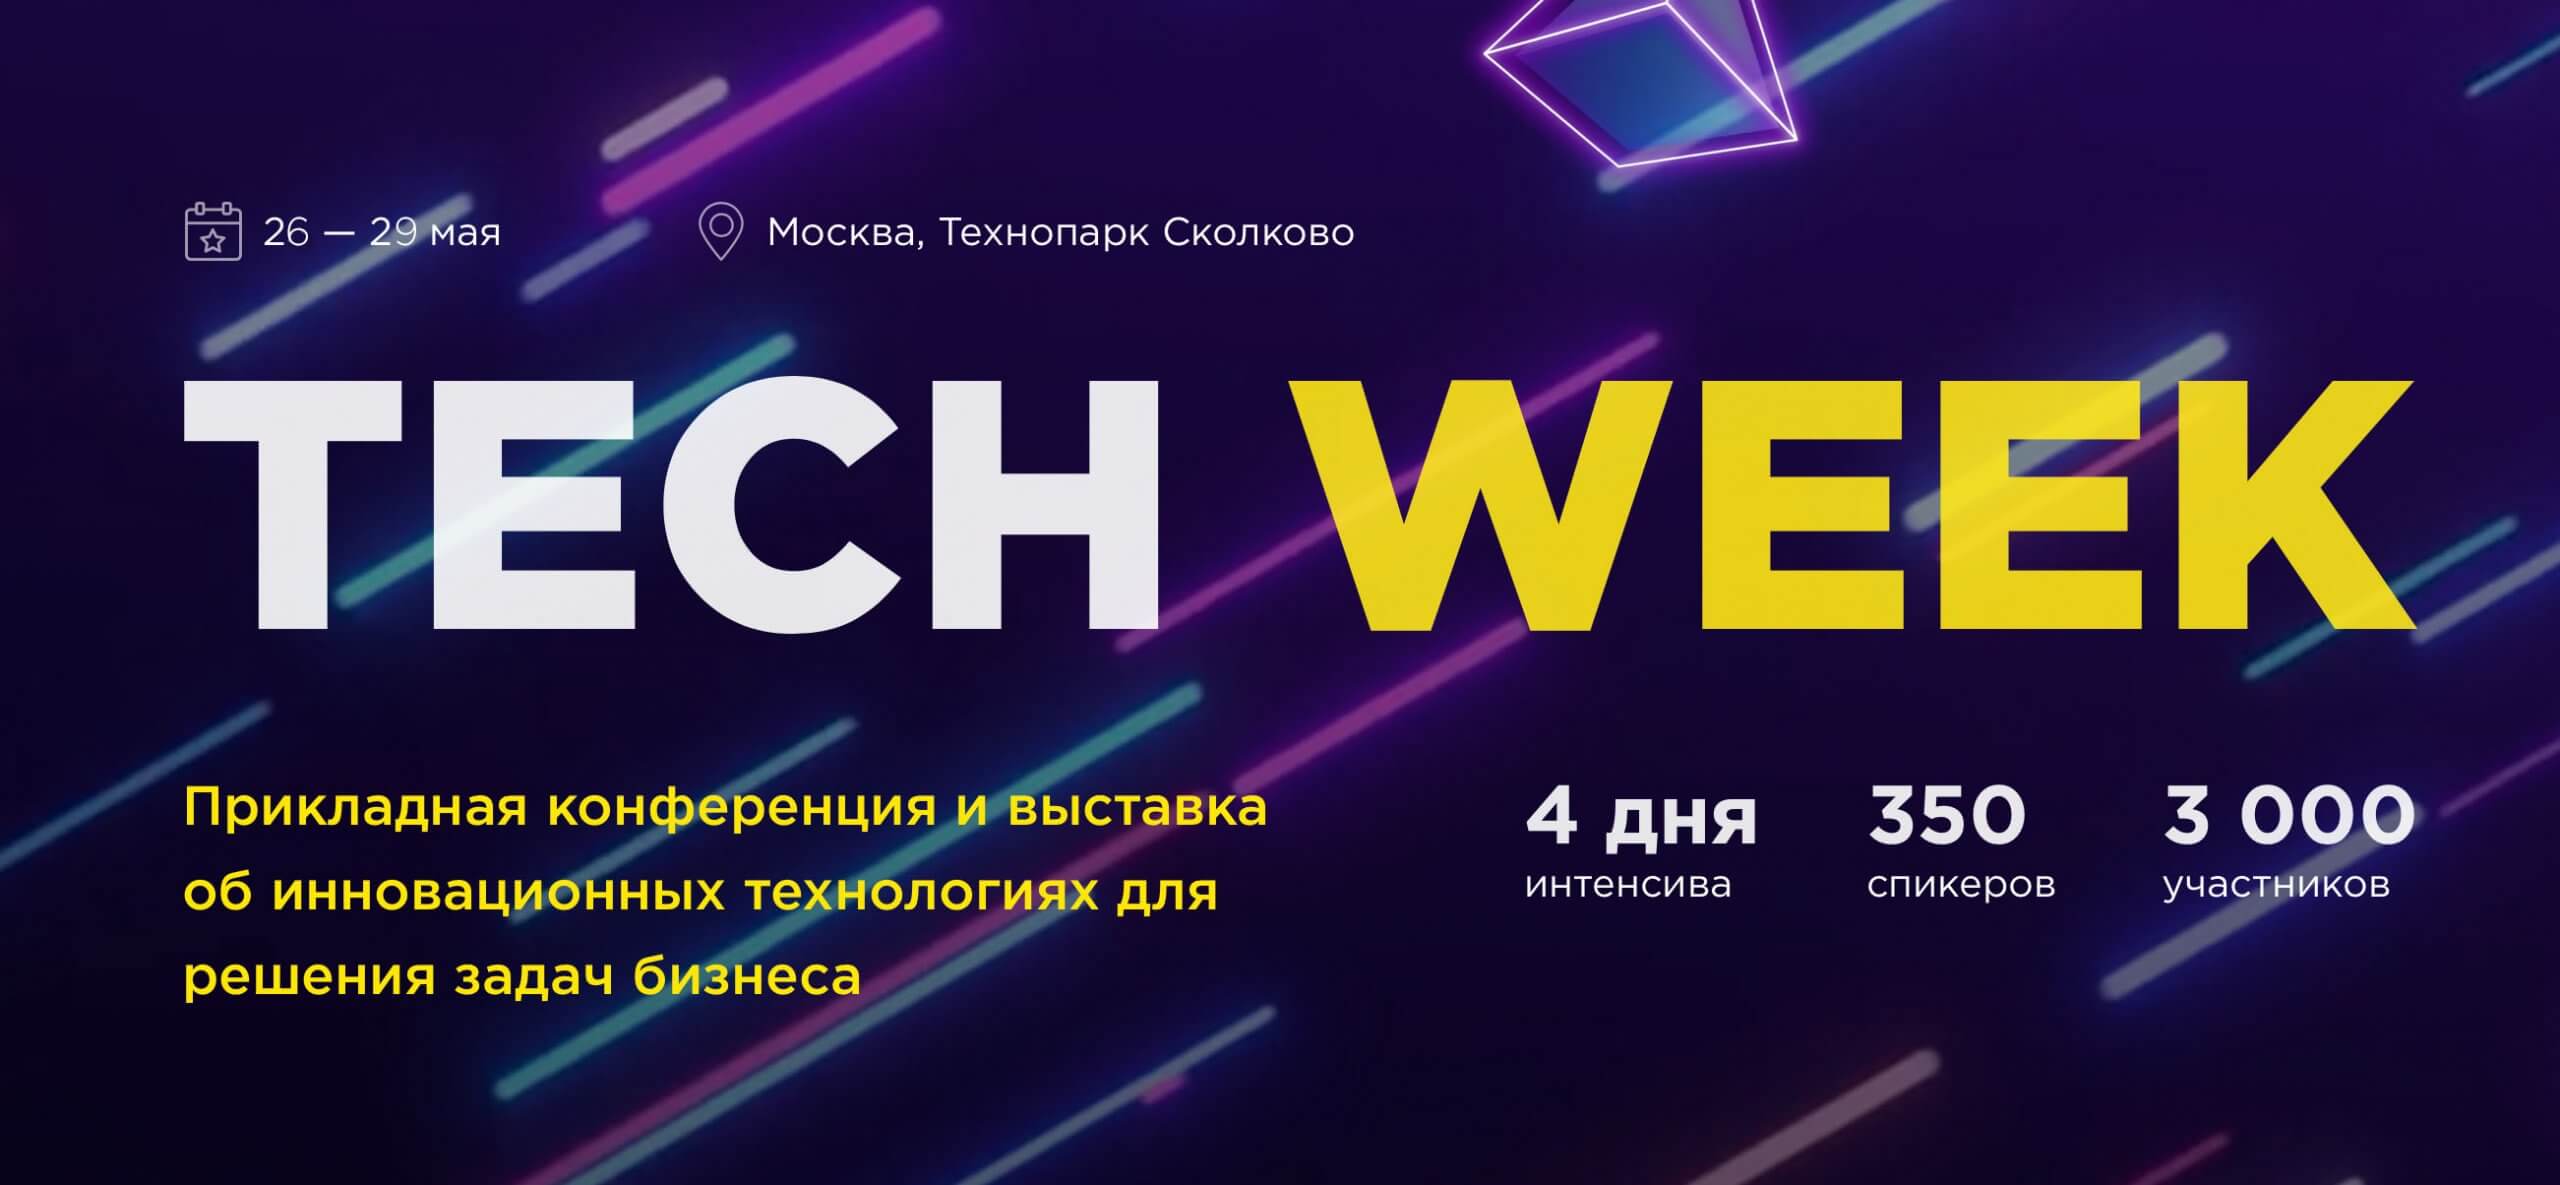 Tech Week 2020 пройдет в Москве с 26 по 29 мая